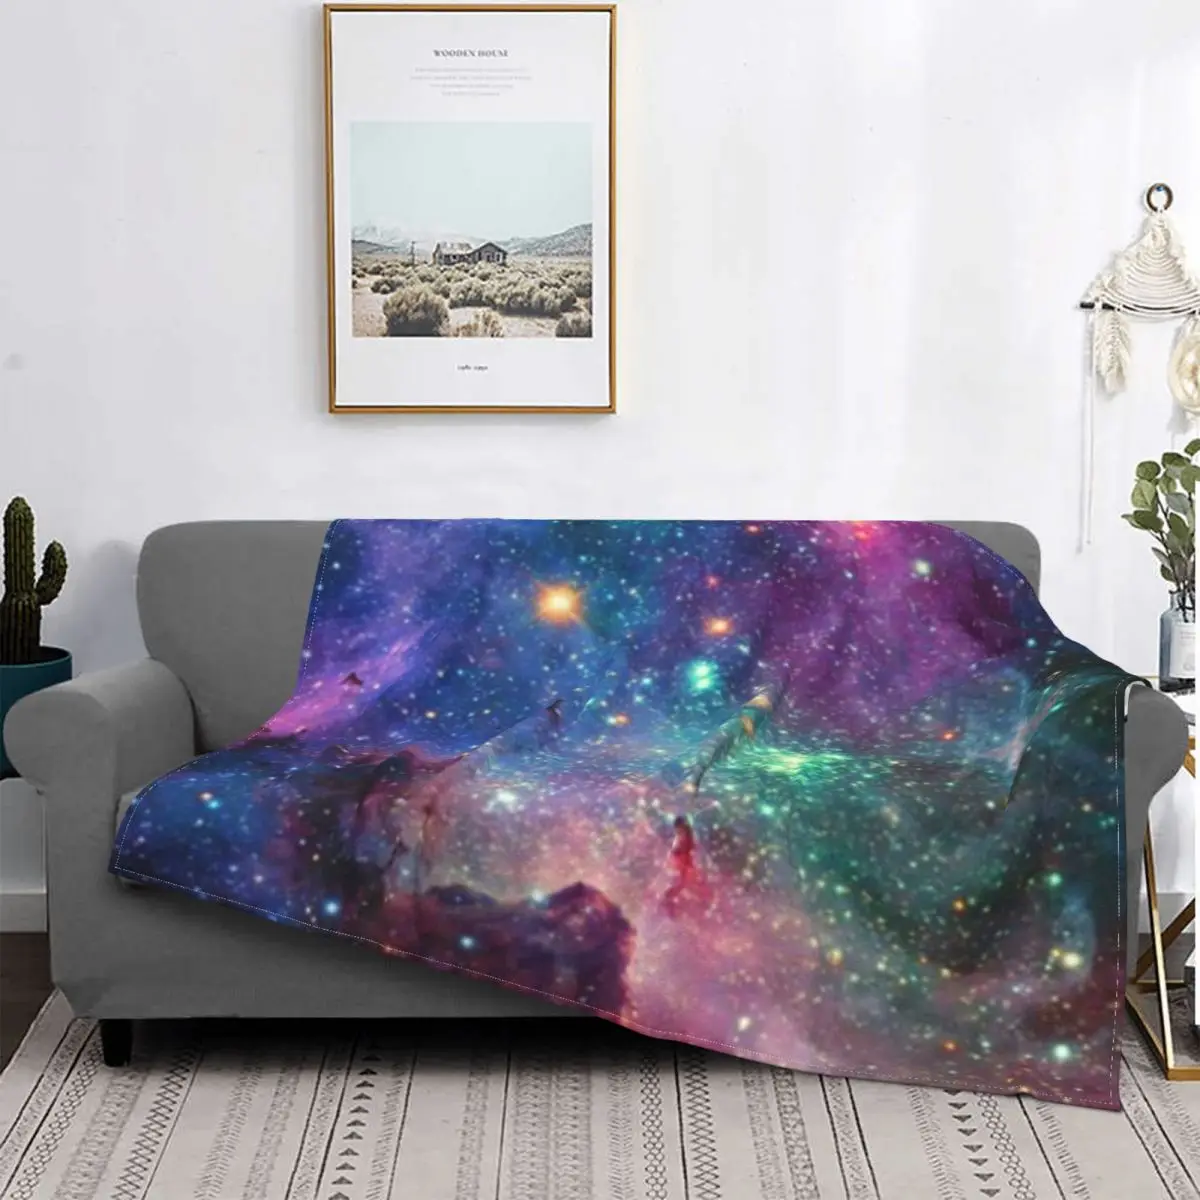 

Galaxy 2 одеяло покрывало для кровати плед покрывала для кровати одеяло Толстовка роскошное пляжное полотенце